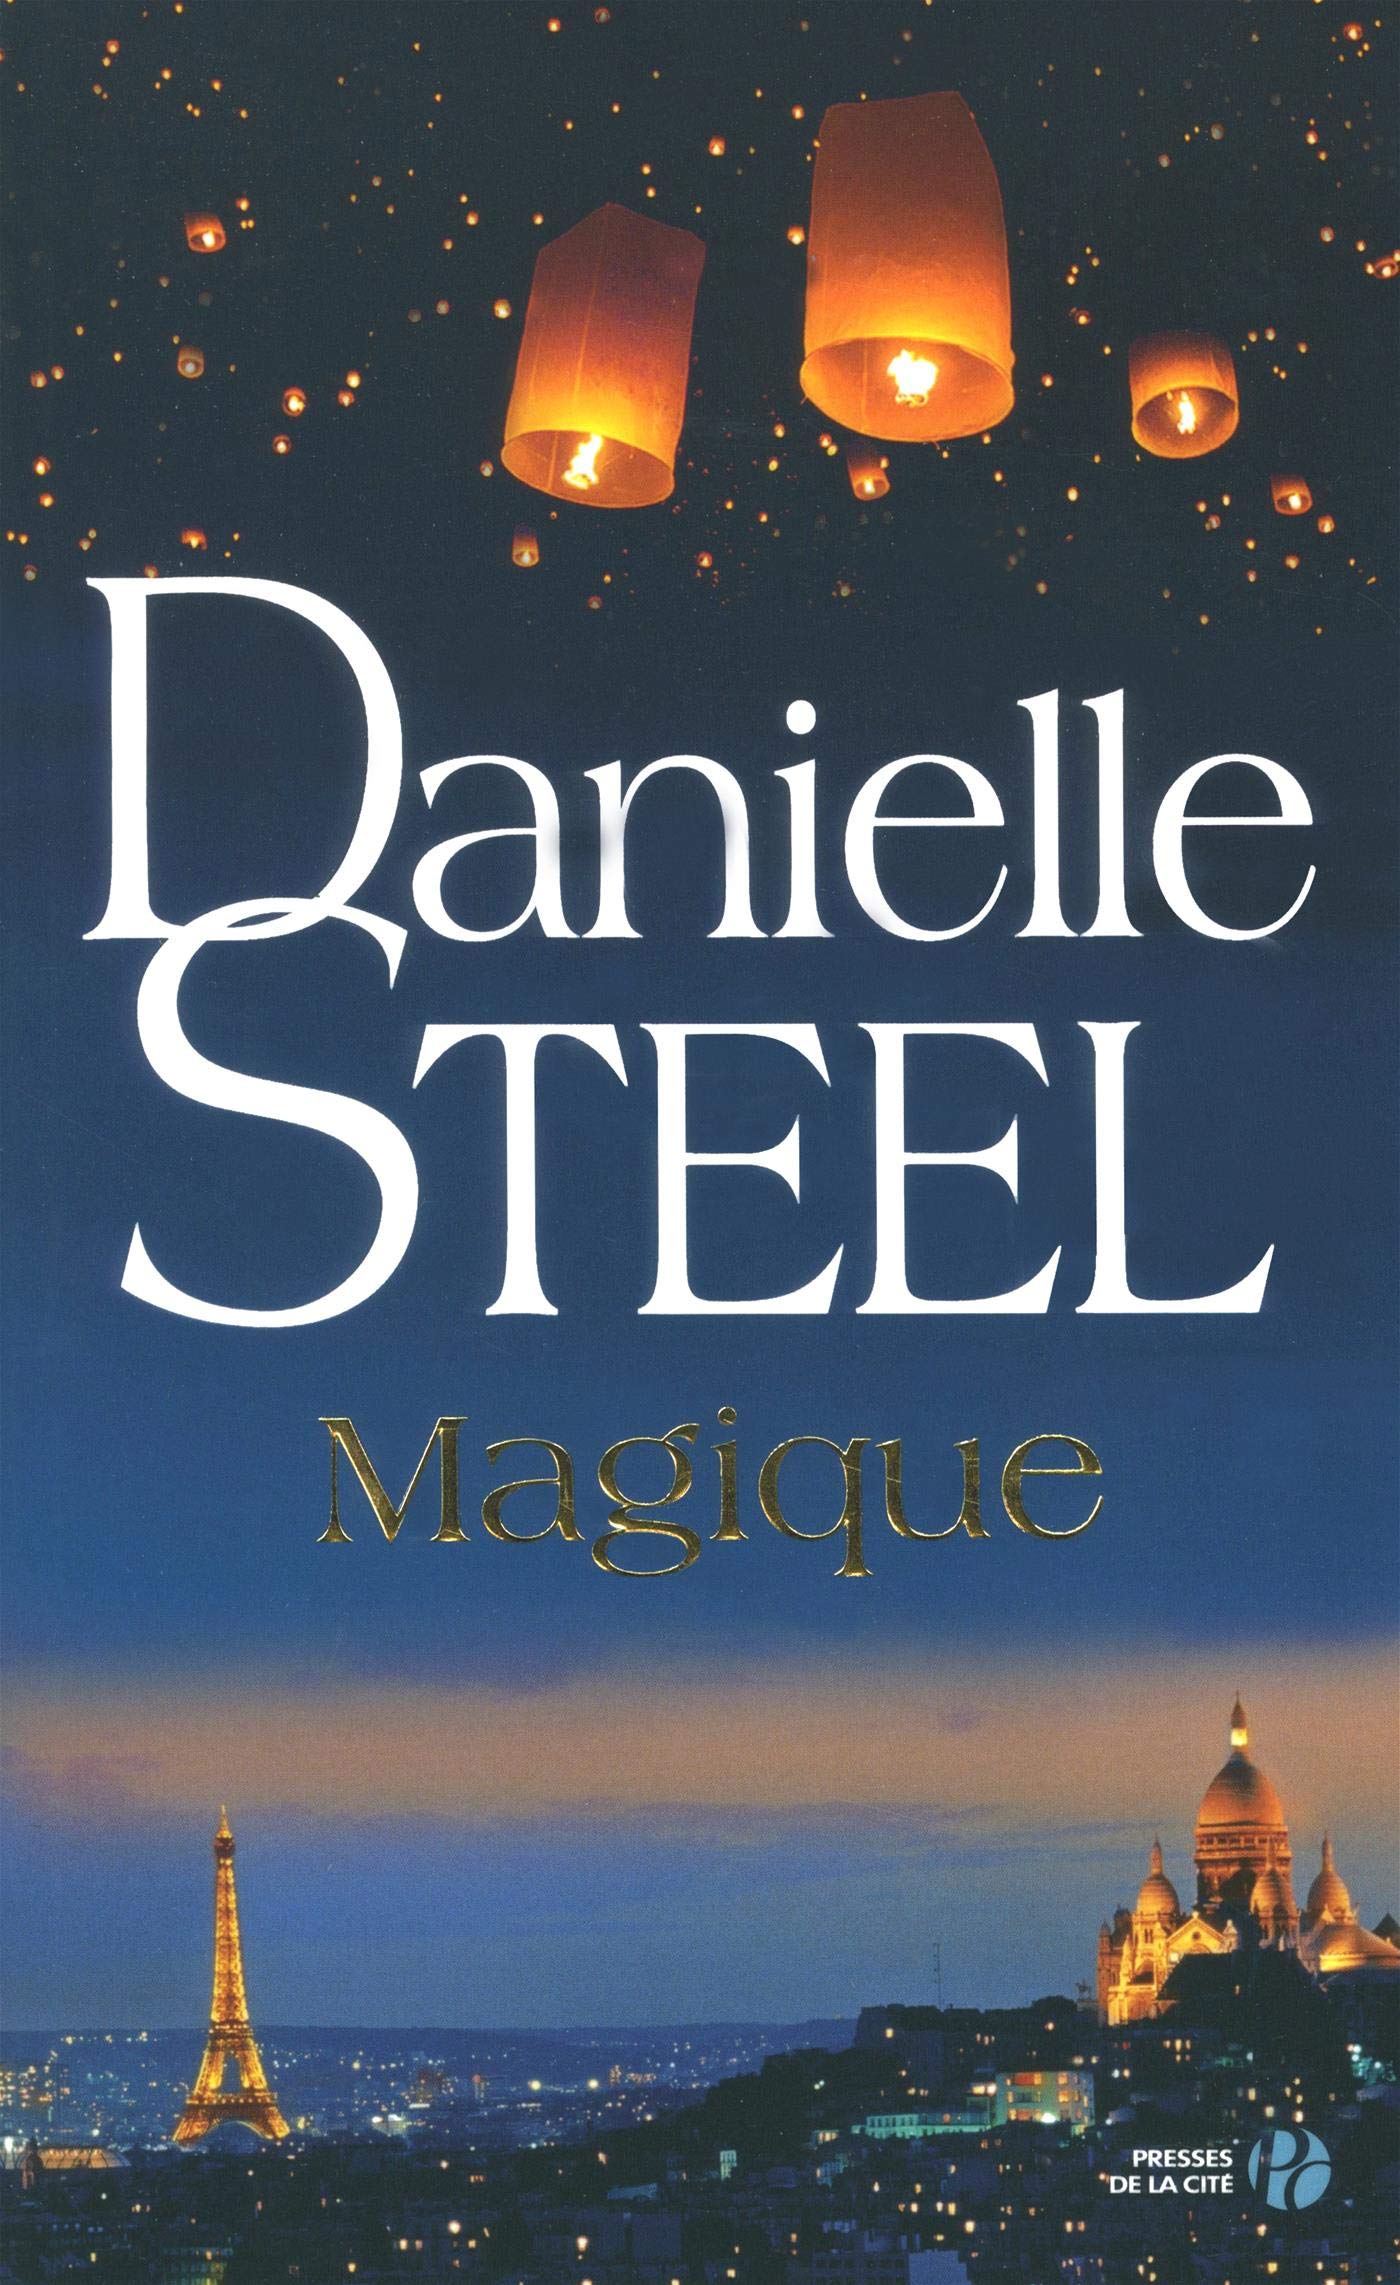 Magique - Danielle Steel